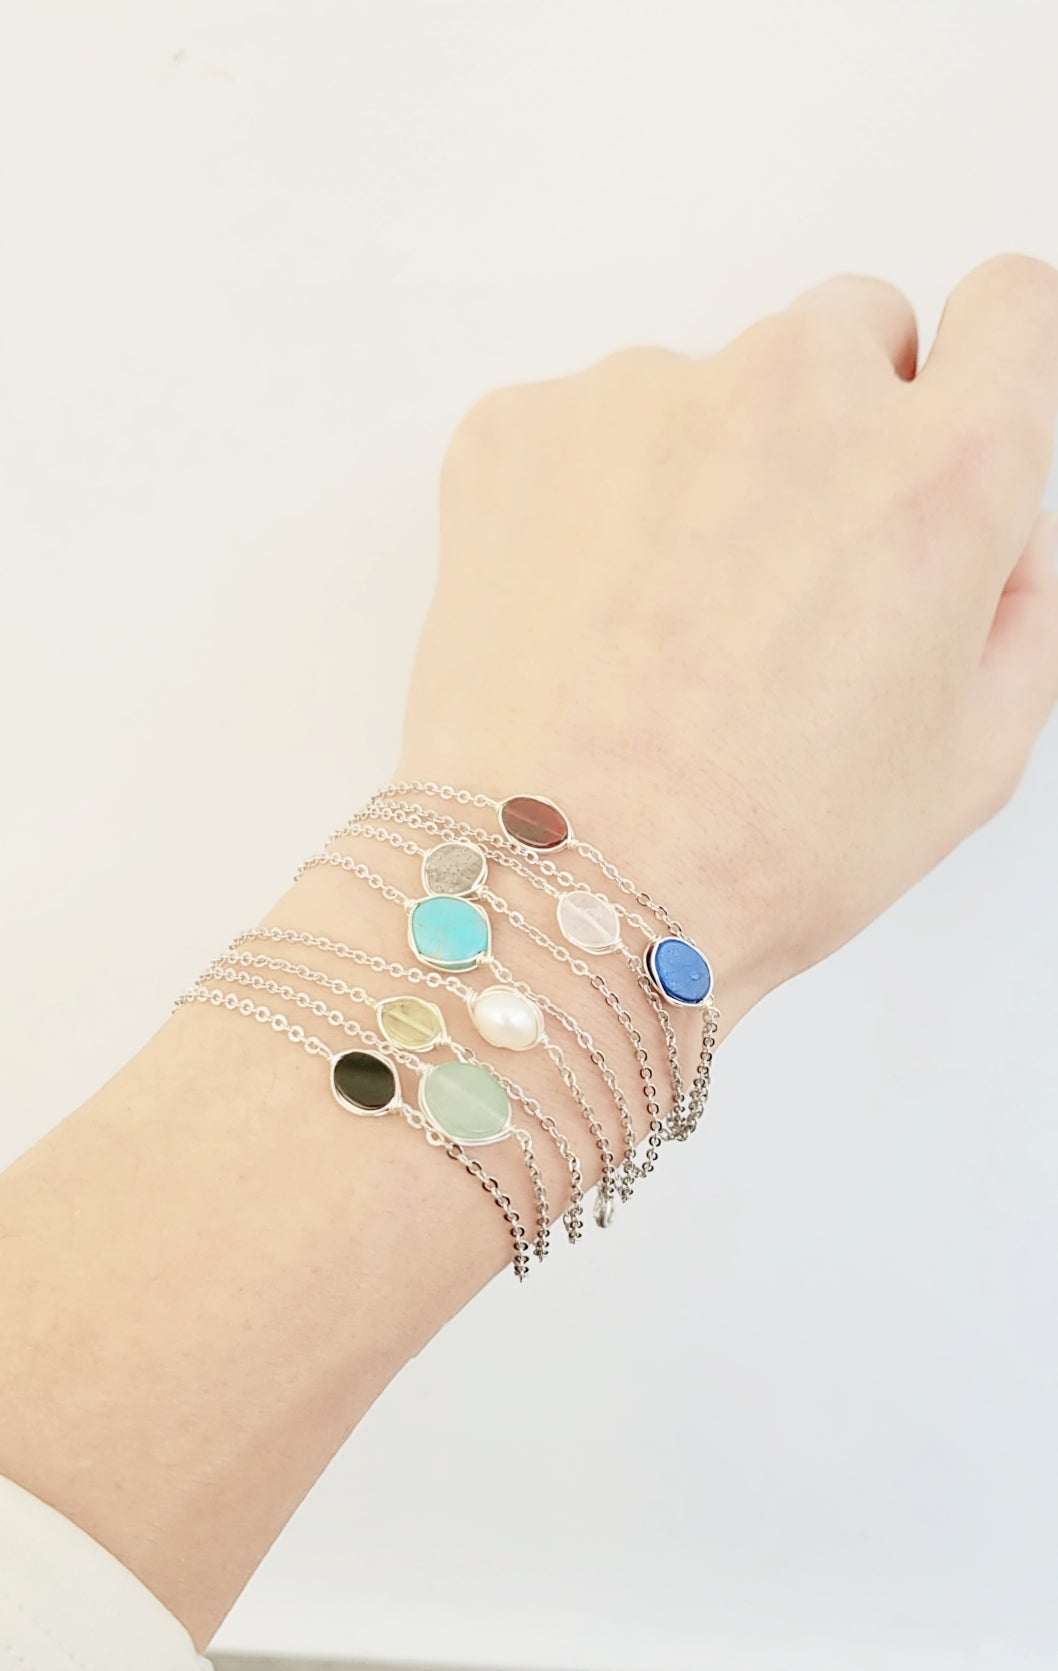 Color Gem stone bracelet